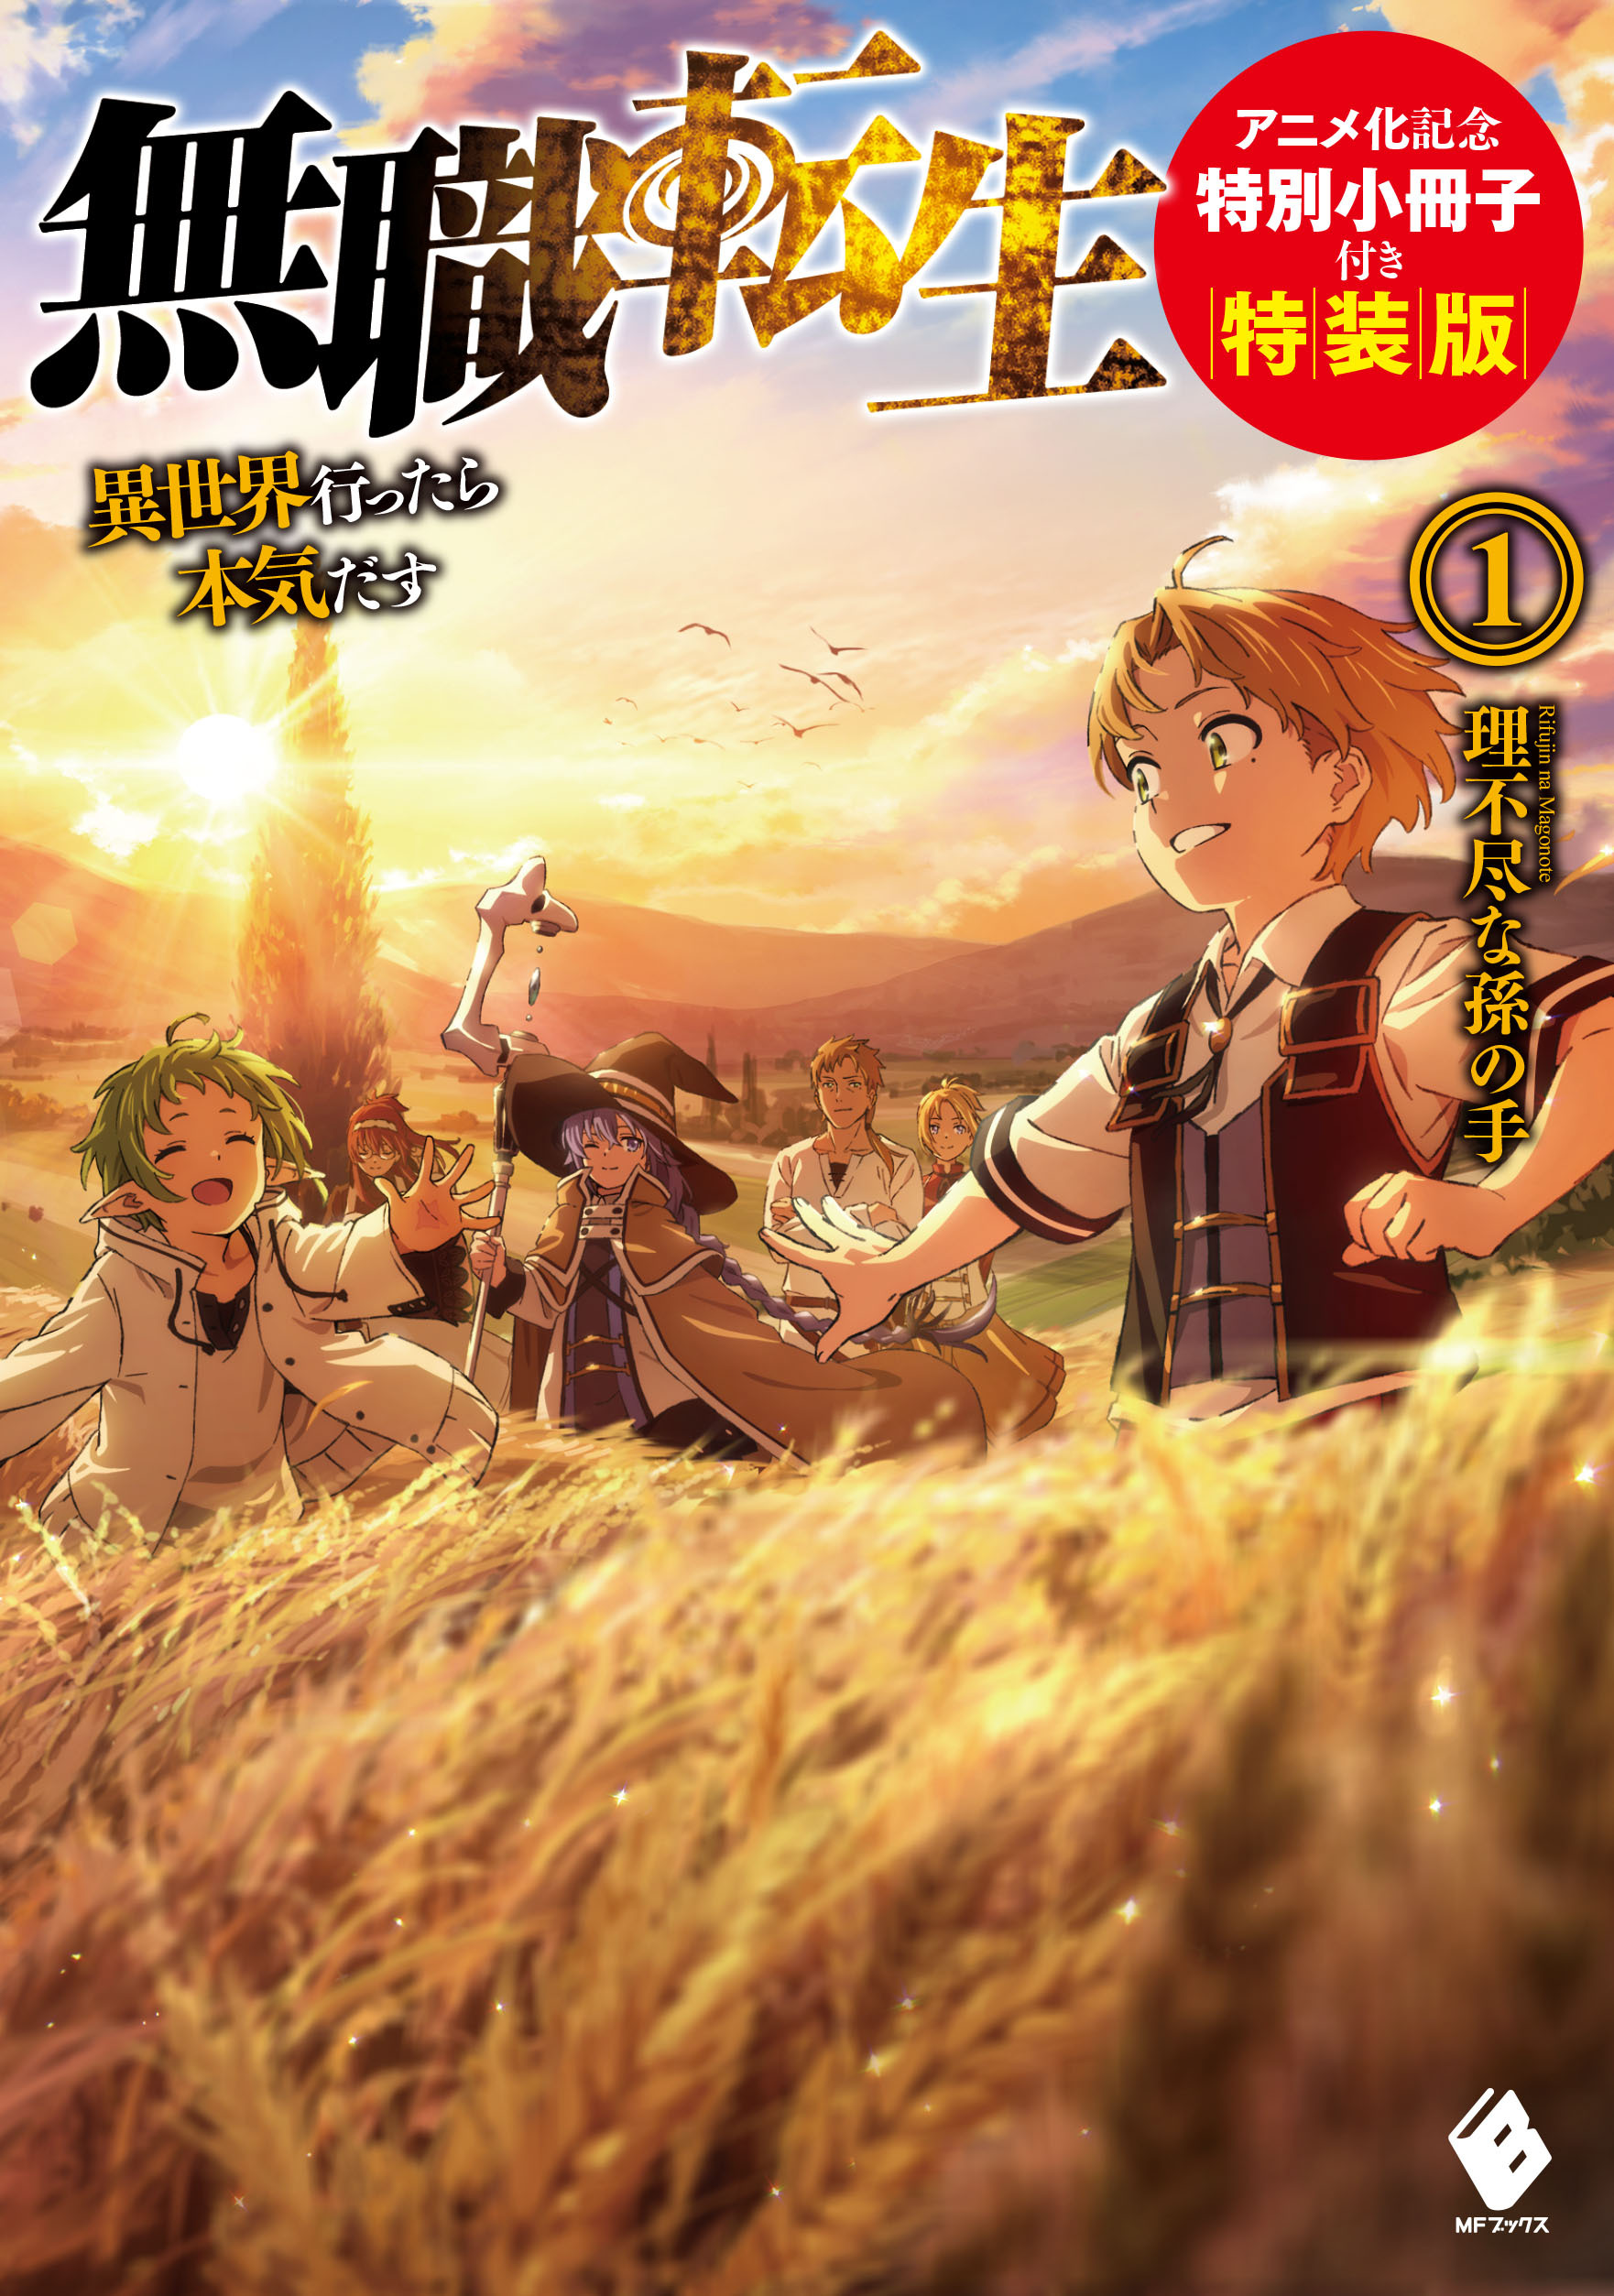 Mushoku Tensei Jobless Reincarnation Special Book Anime Manga Japanese